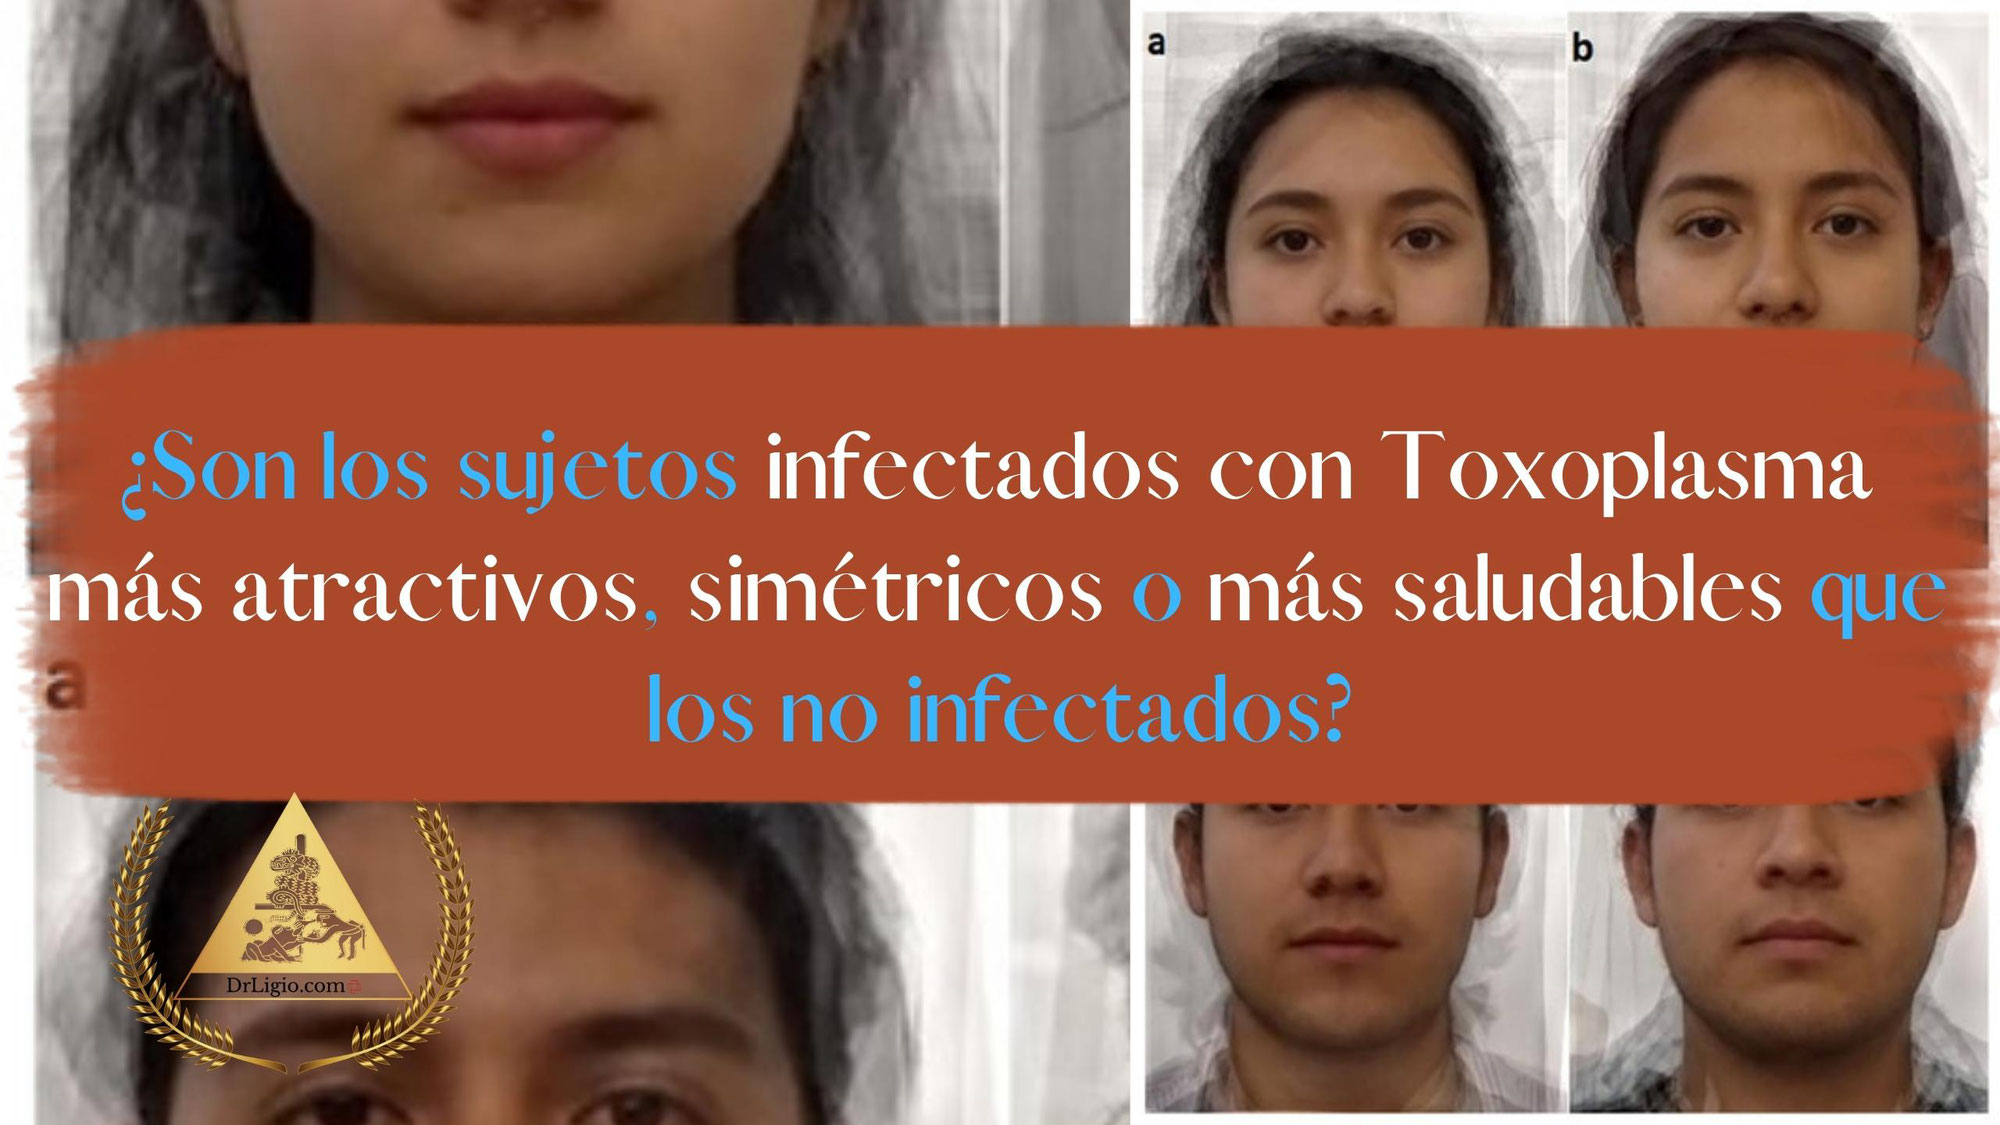 ¿Son los sujetos infectados con Toxoplasma más atractivos, simétricos o más saludables que los no infectados?